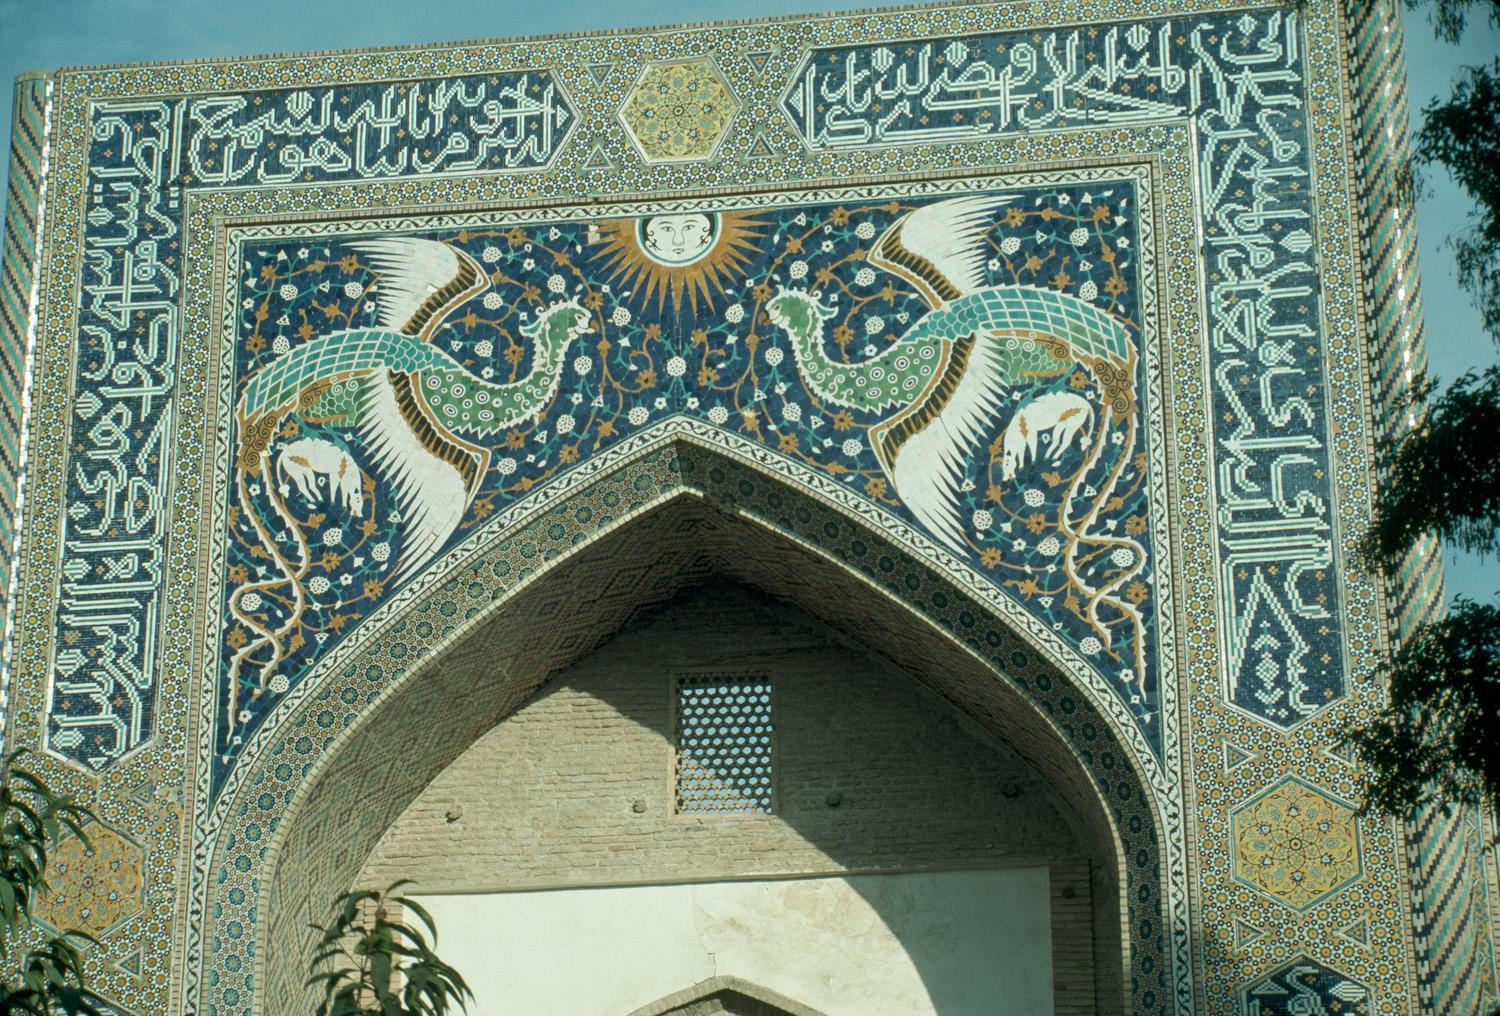 Detail view of the pishtaq